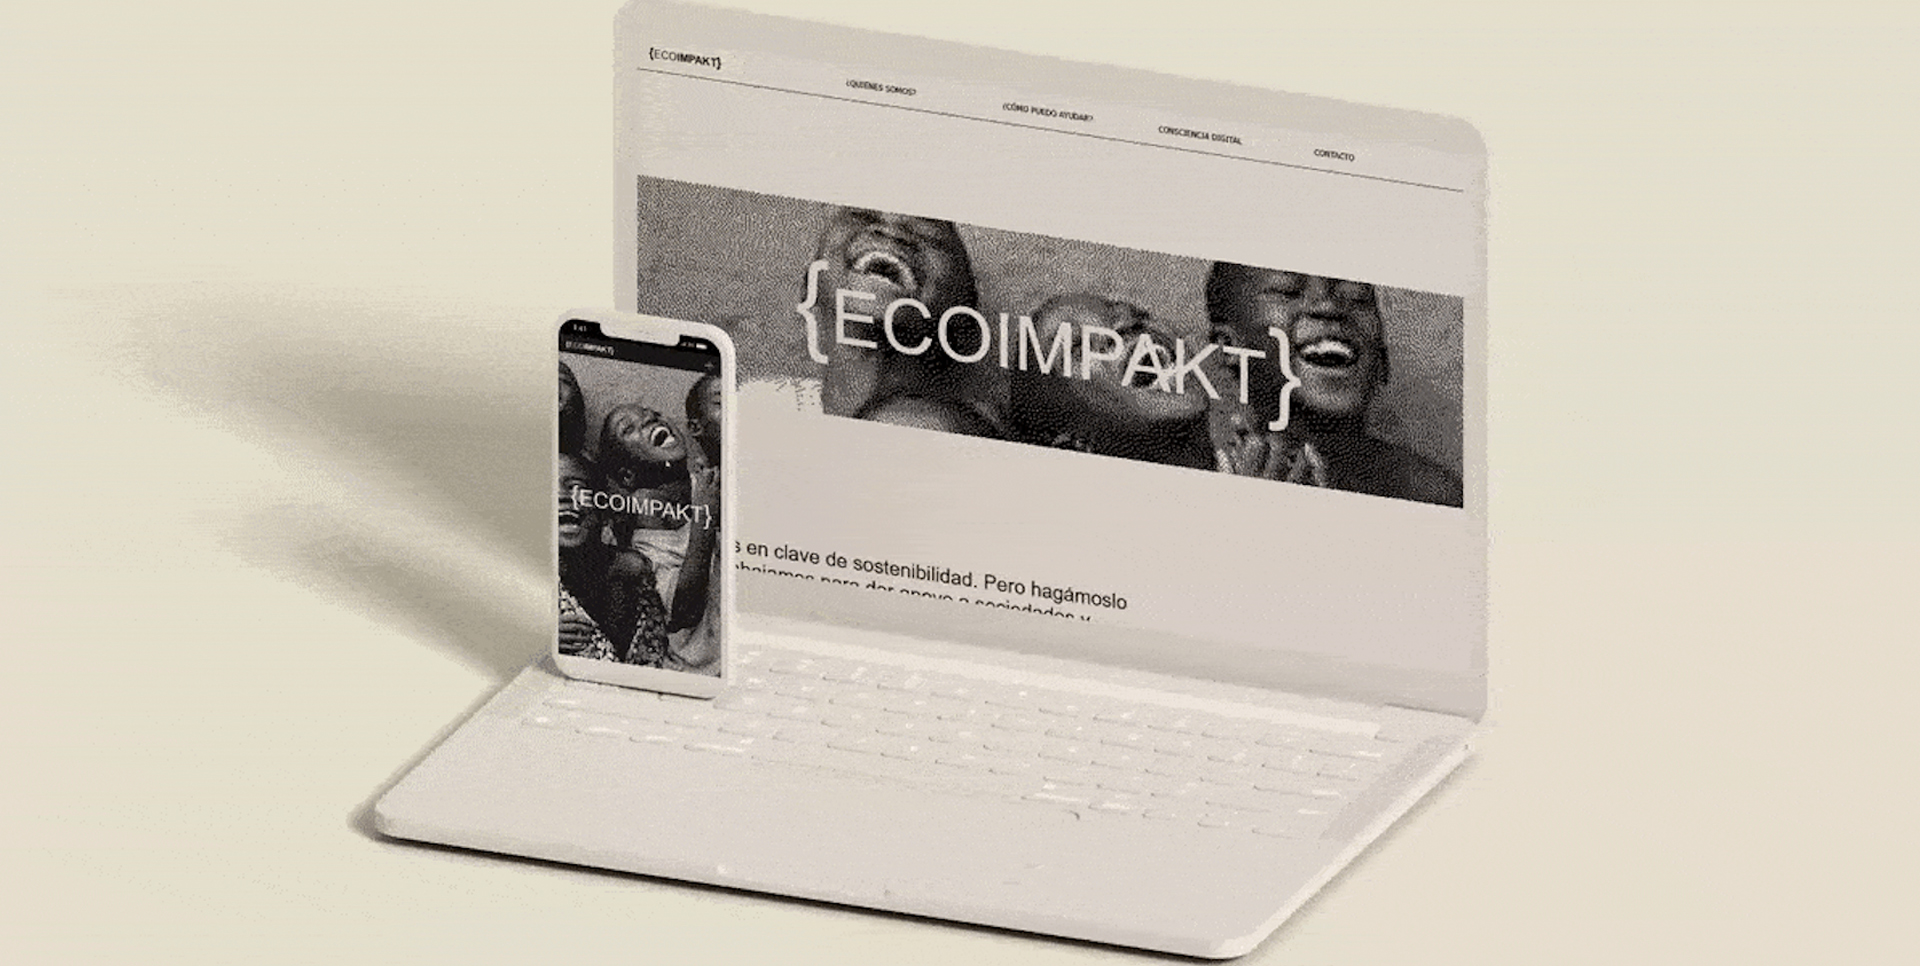 Ecoimpakt.org